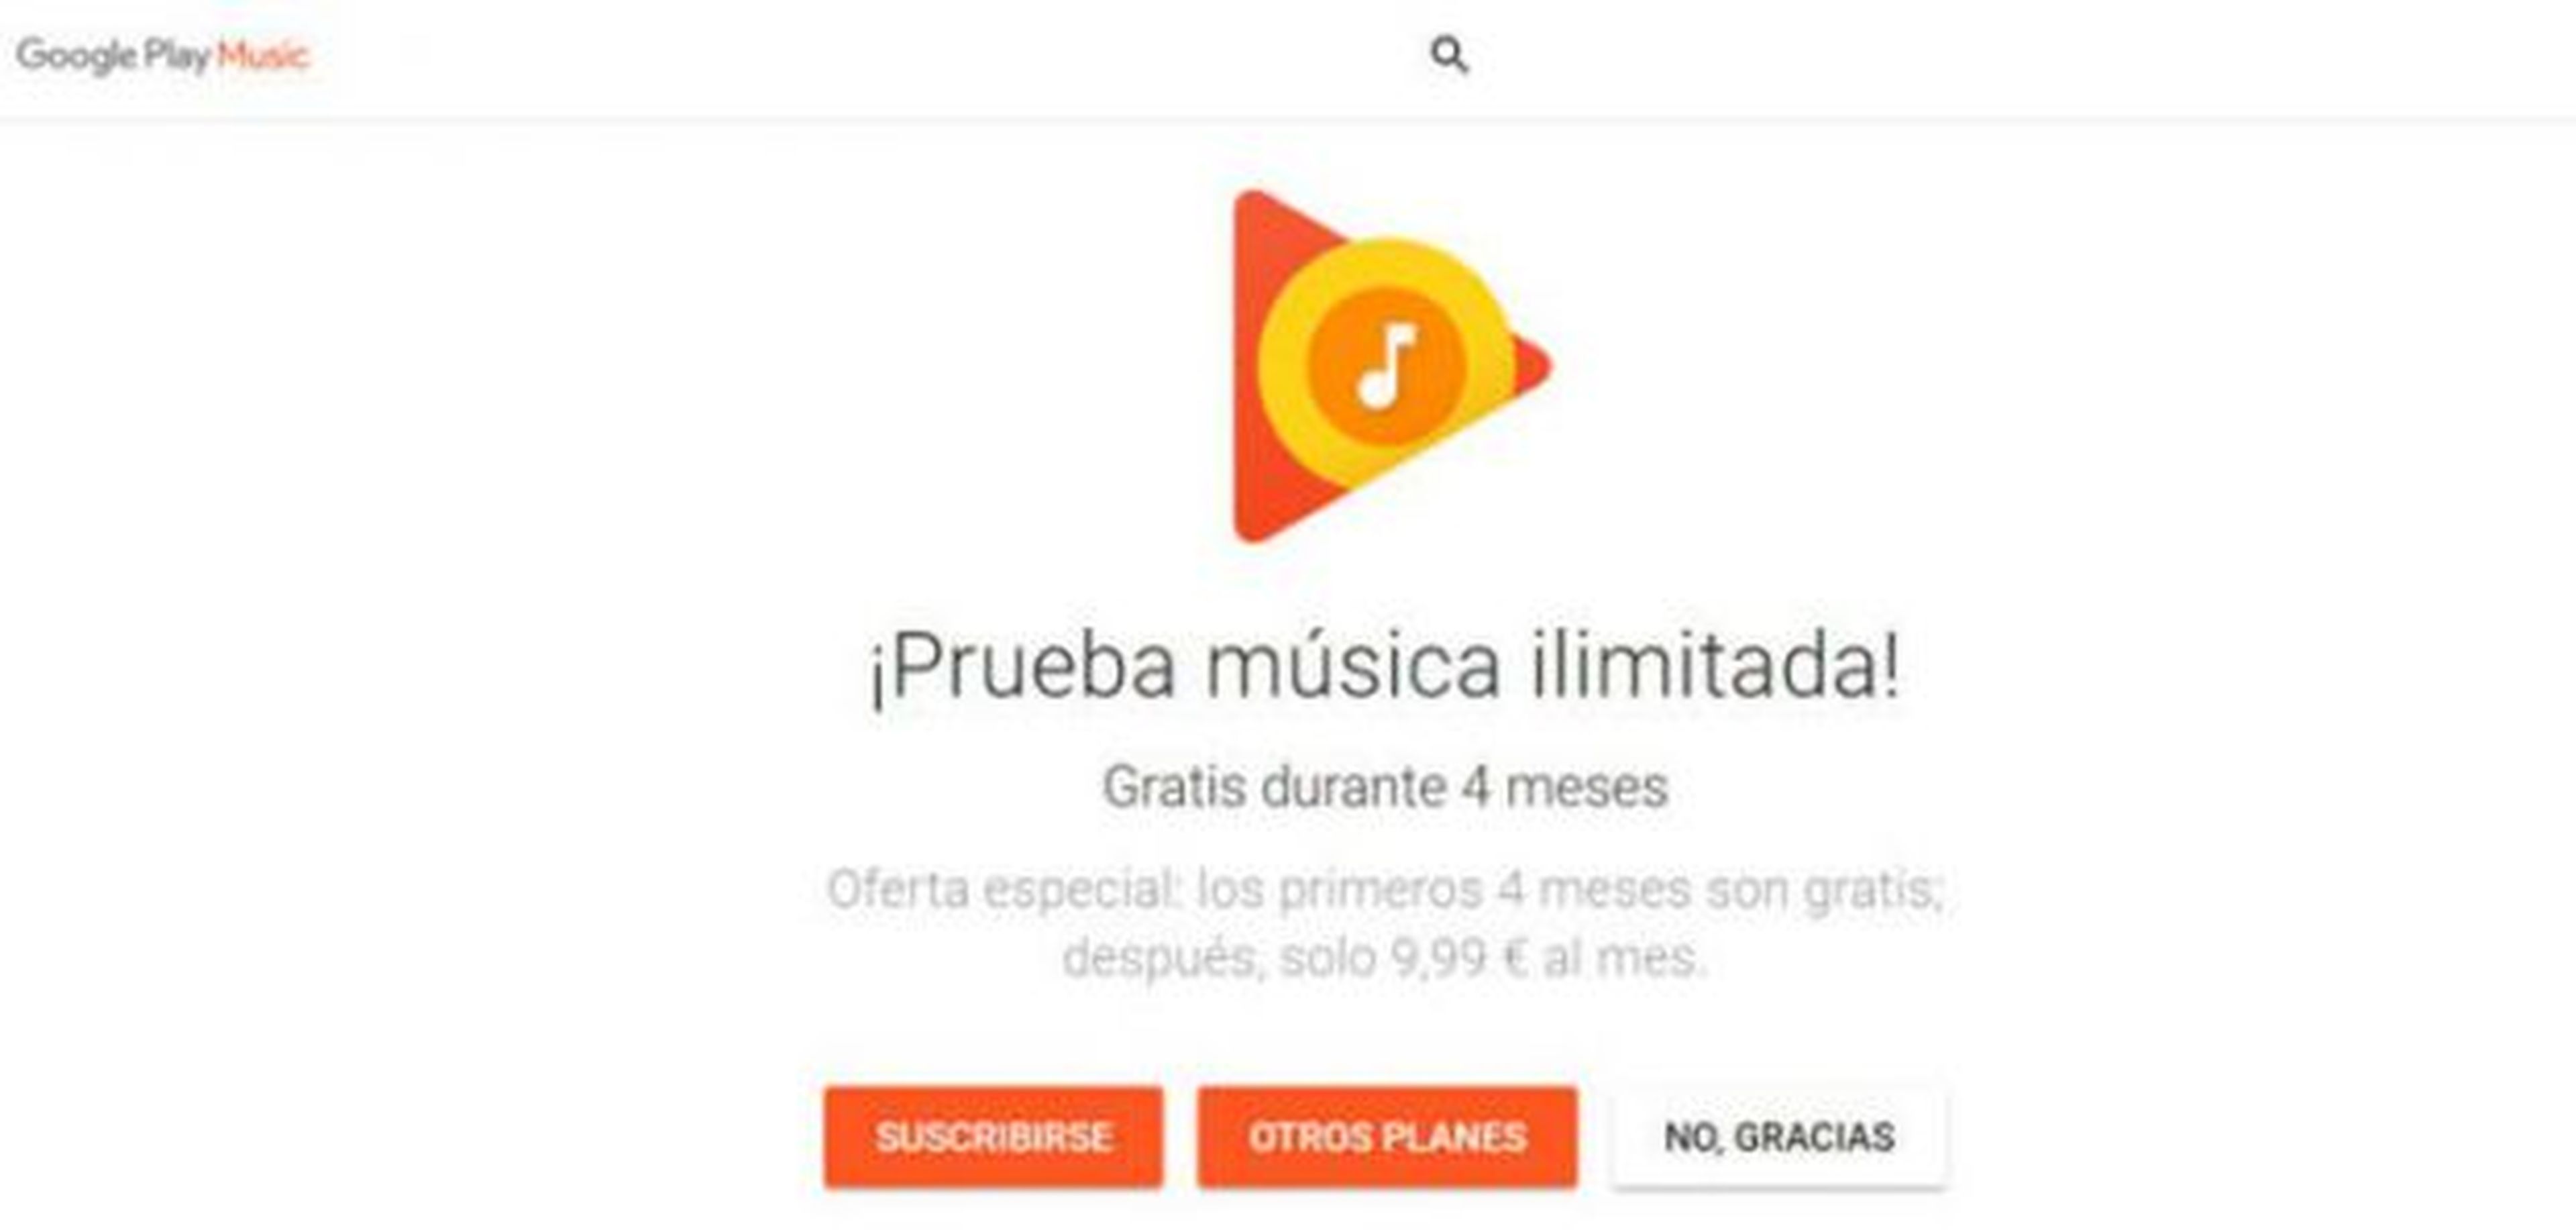 google play music oferta